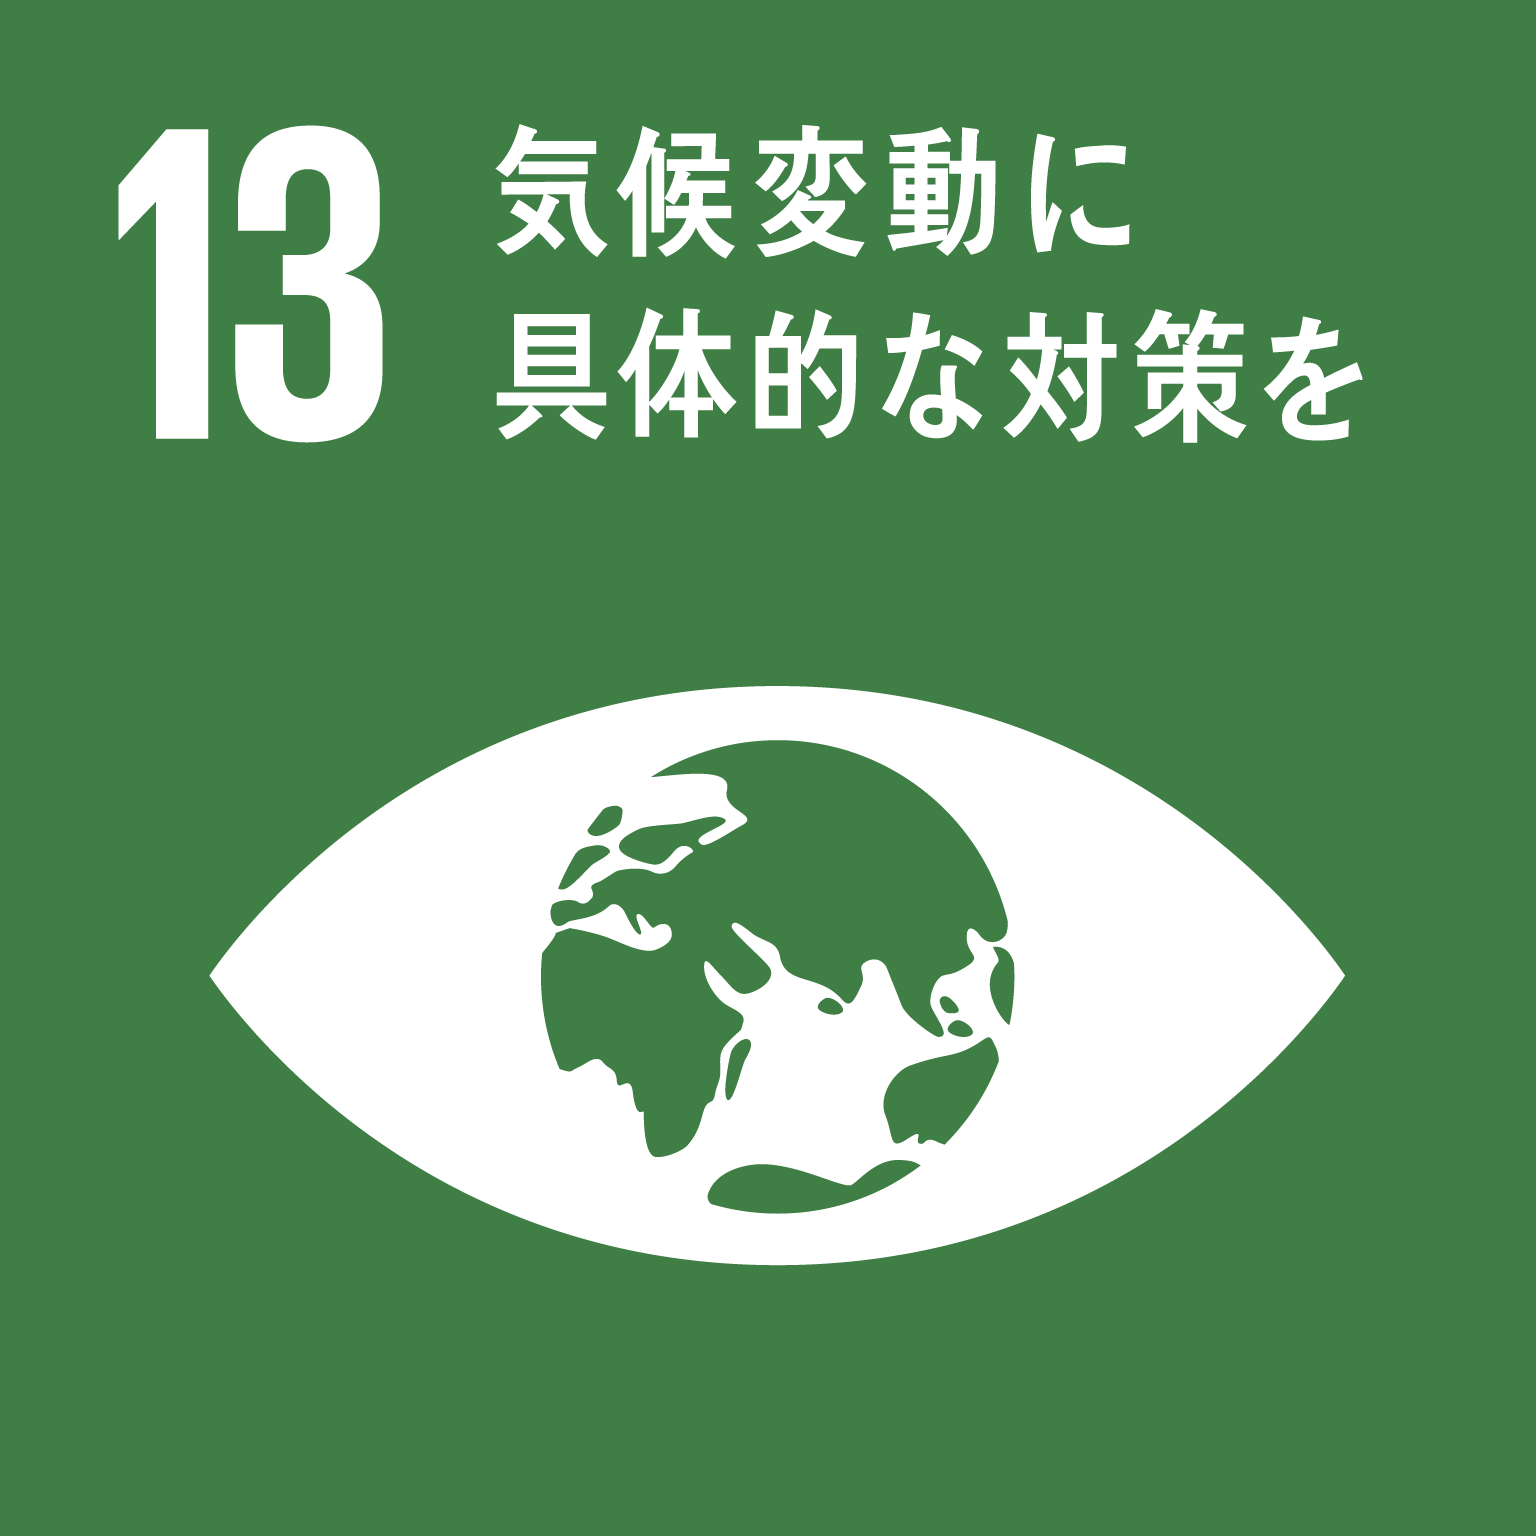 目標13気候変動に具体的な対策をのロゴ